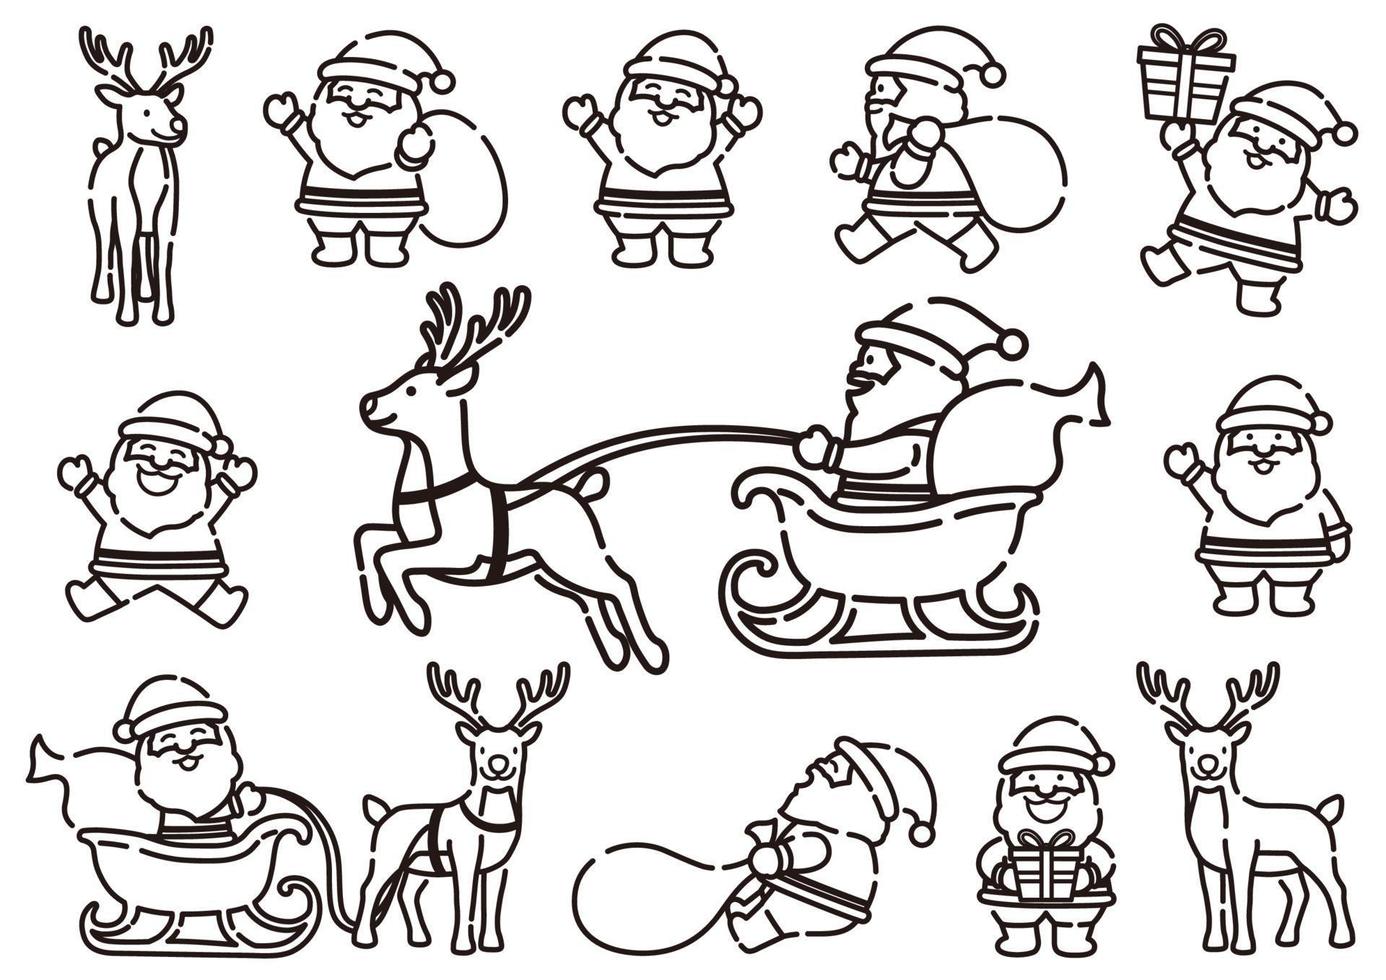 divertente cartone animato babbo natale e renne disegno al tratto impostato in pose dinamiche, illustrazione vettoriale isolato su uno sfondo bianco.